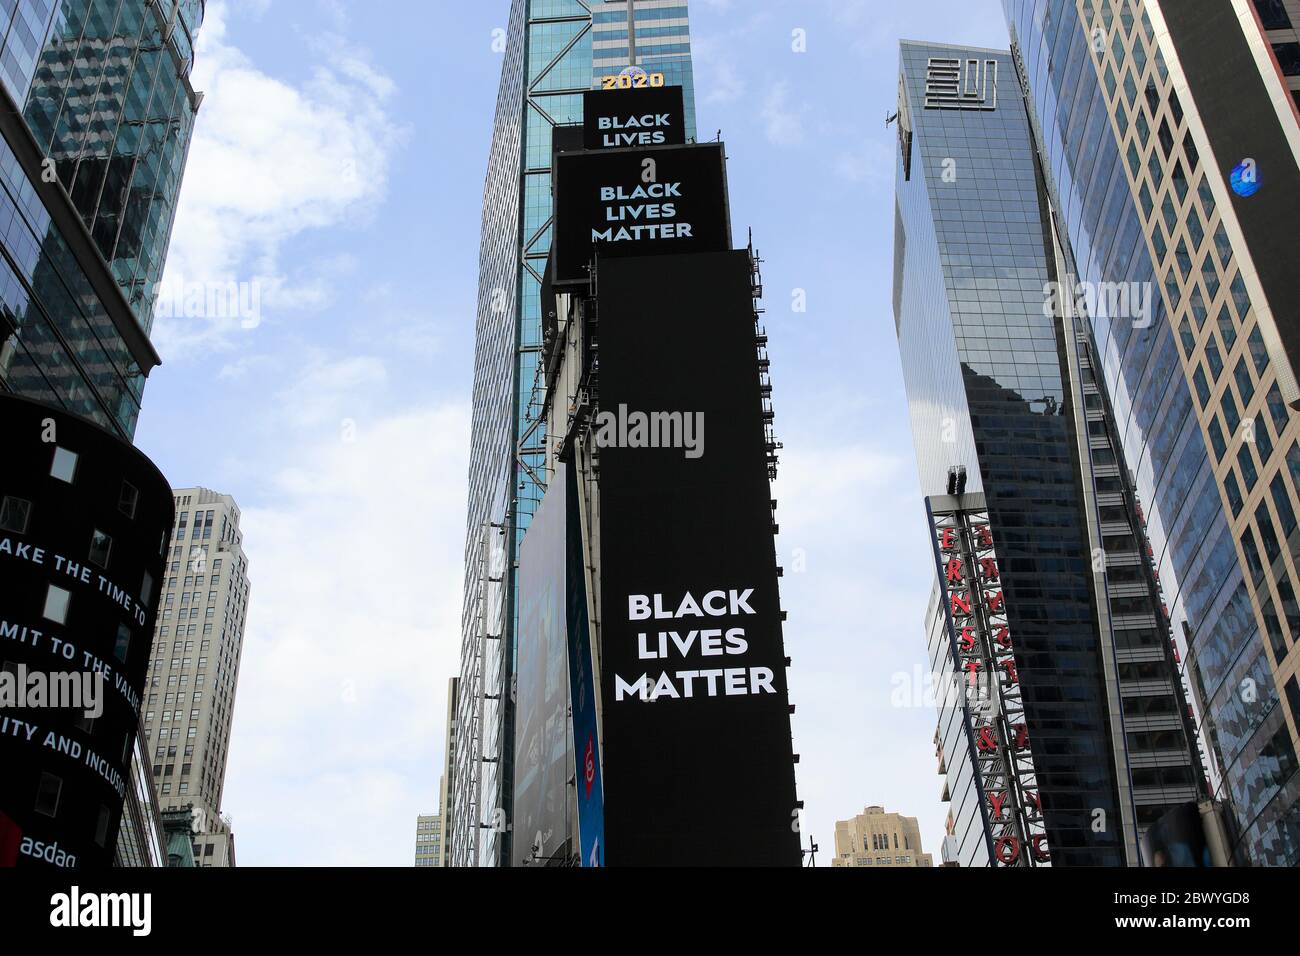 Schwarze Leben Materie Plakatwand im Times Square. Der Tod von George Floyd, während in der Obhut der Minneapolis-Polizei hat landesweite Proteste rund um die Vereinigten Staaten gefordert Gerechtigkeit und sozialen Wandel. 1 Times Square, Manhattan, New York City, USA. Juni 2020 Stockfoto